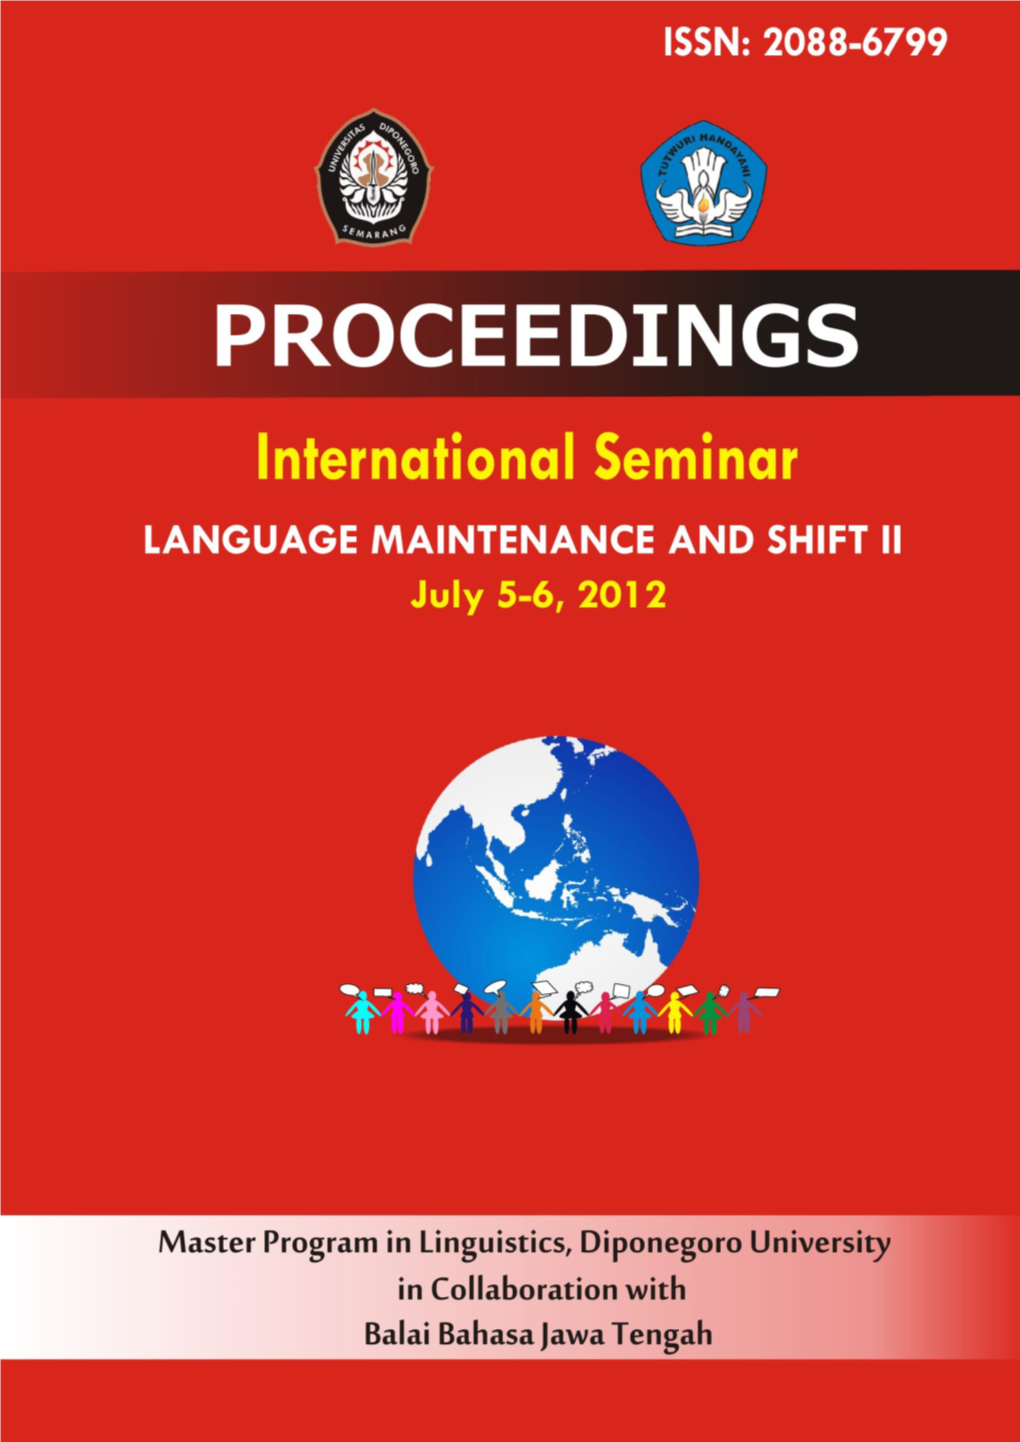 International Seminar “Language Maintenance and Shift II”, July 5-6, 2012